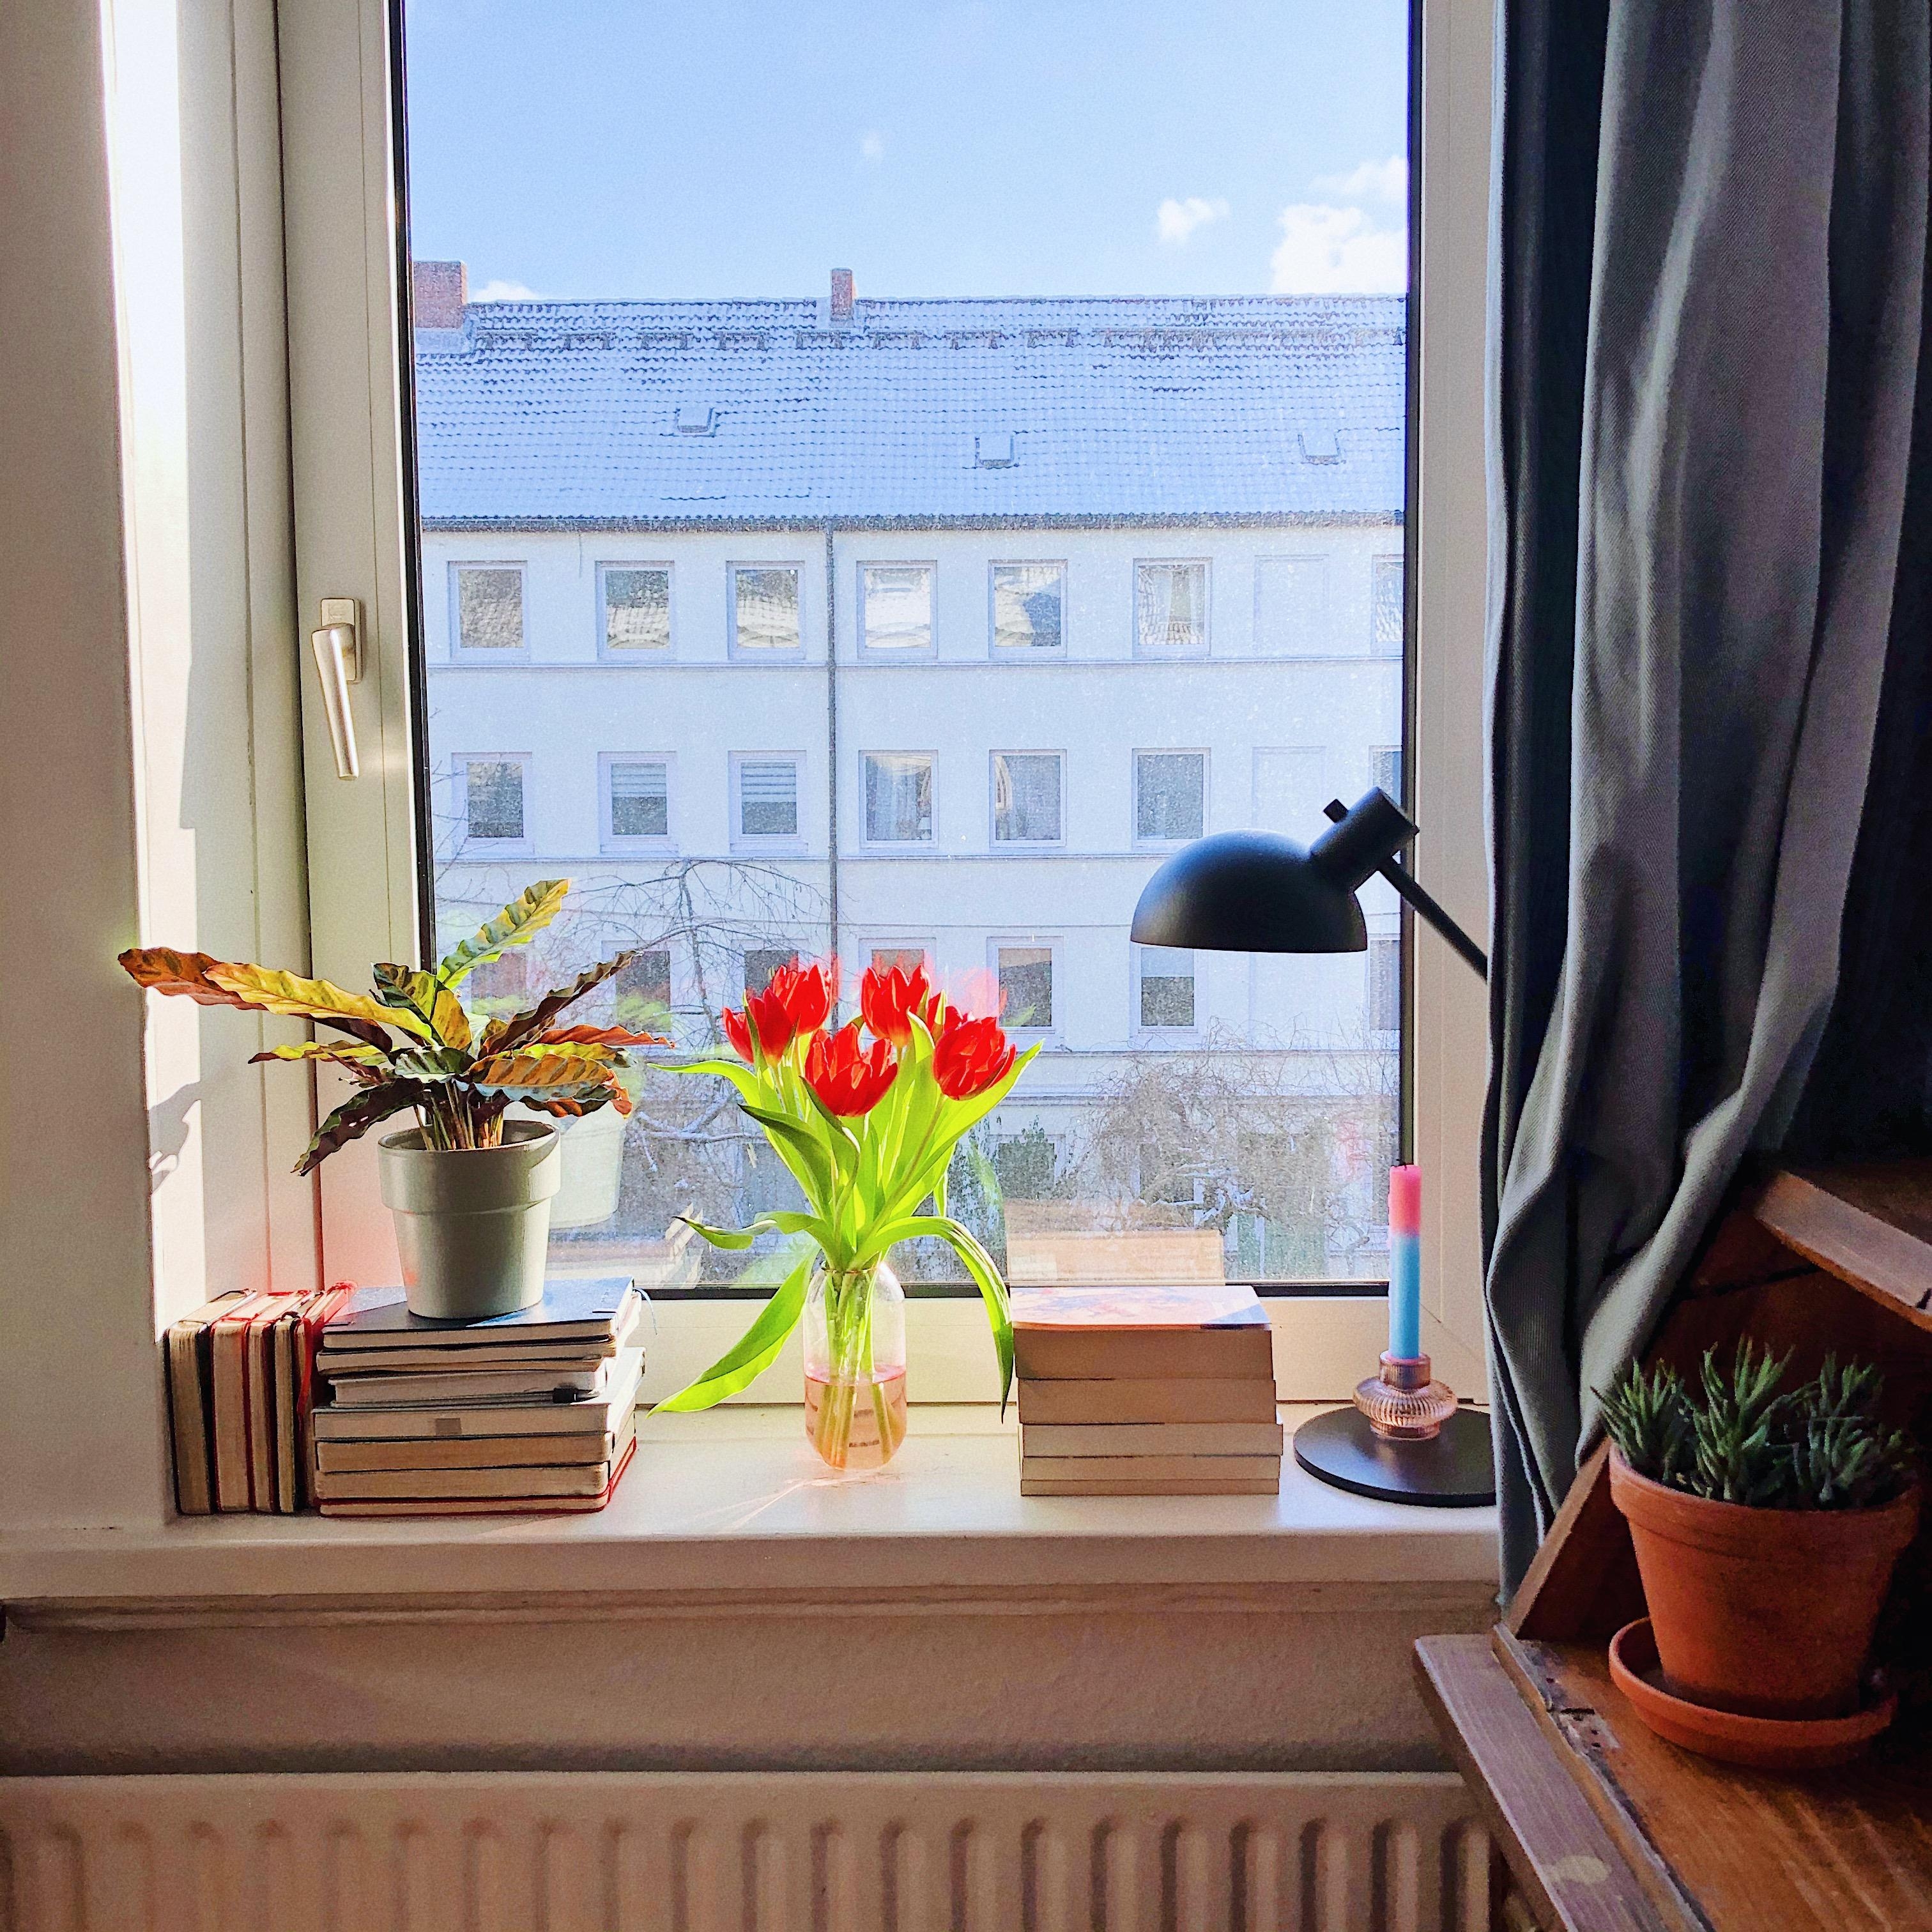 Apartment with a view... Kurzes Durchatmen vom Weltwahnsinn. 
#Bücher #Fensterbank #Blumen